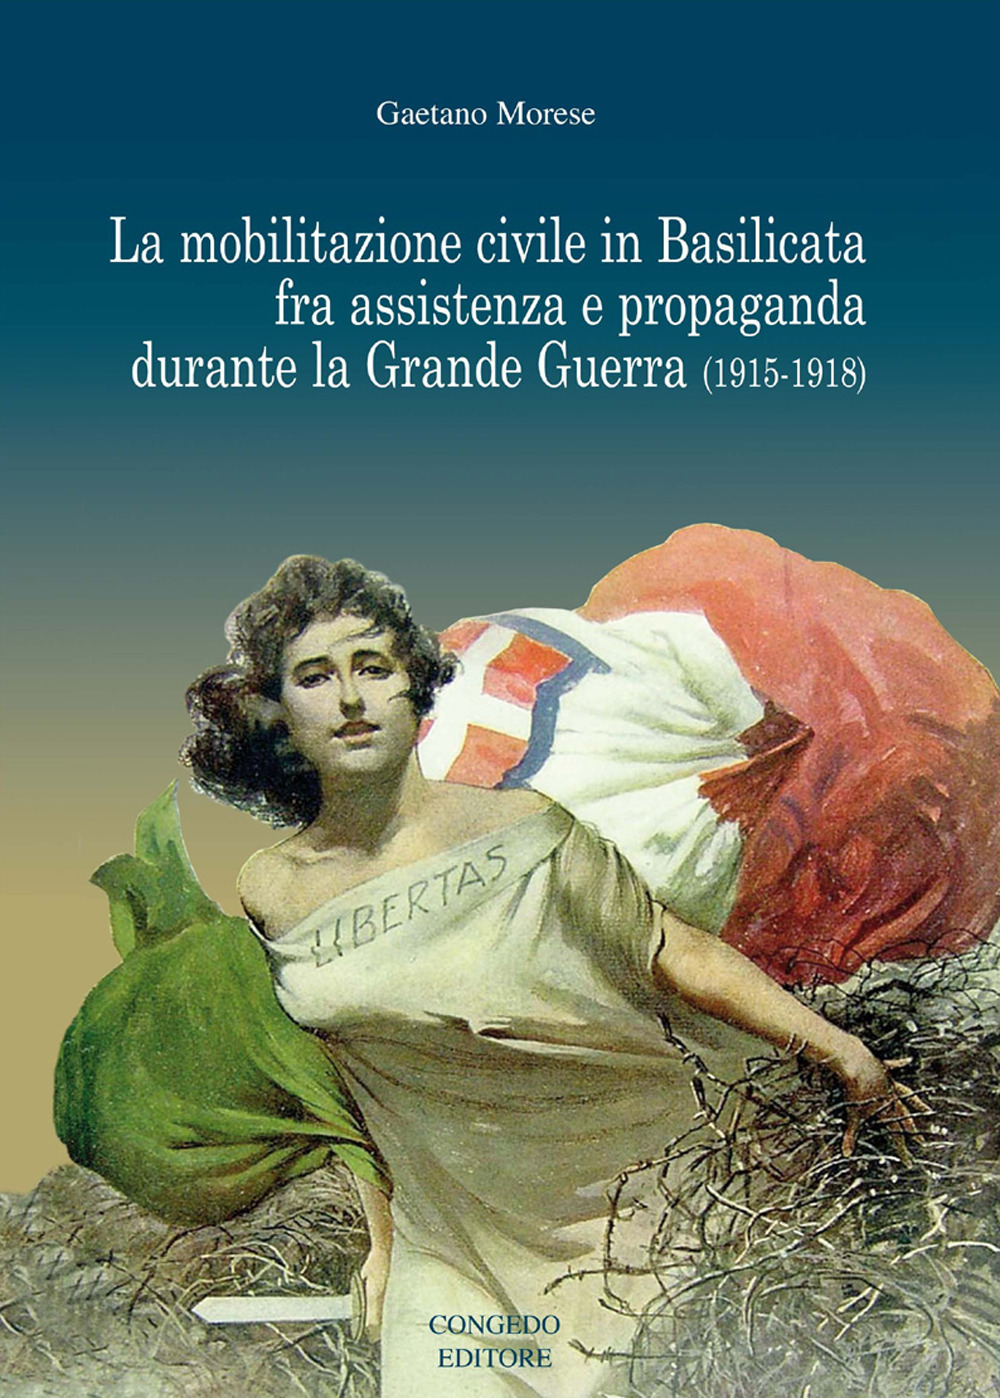 La mobilitazione civile in Basilicata fra assistenza e propaganda durante la Grande Guerra (1915-1918)